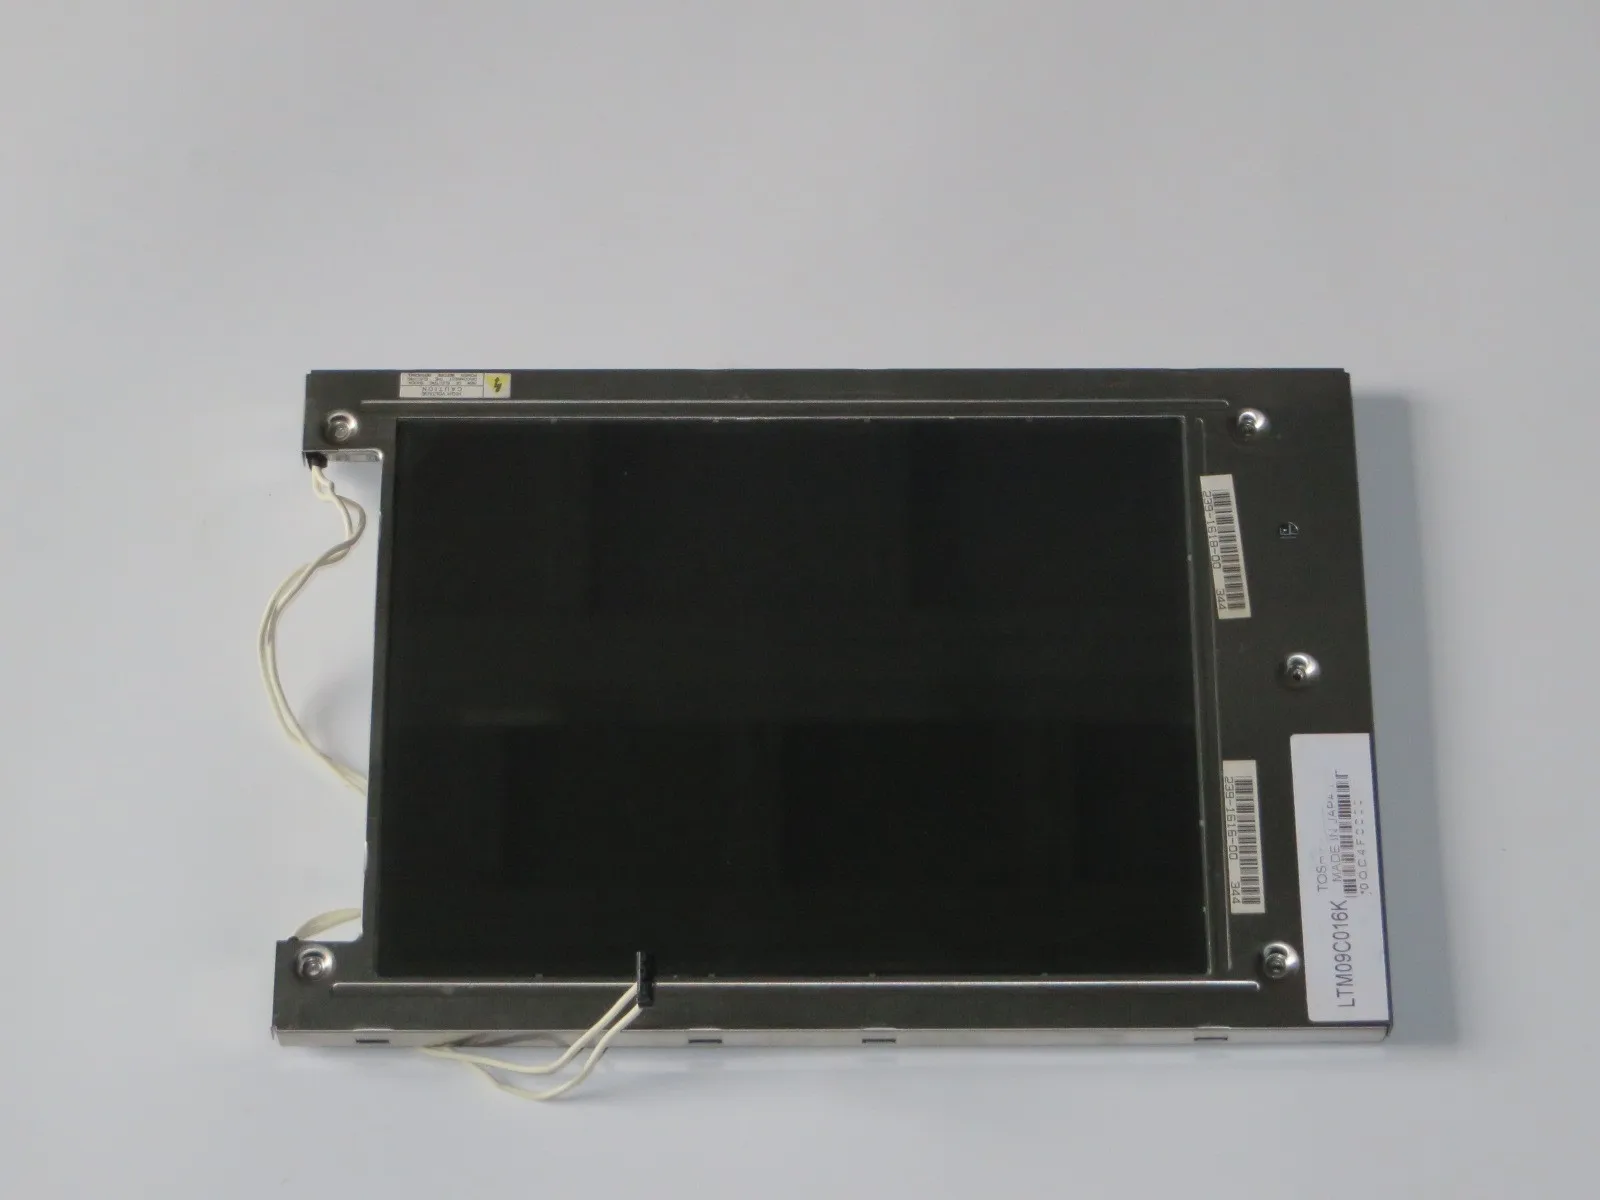 

LTM09C016K 9" LCD SCREEN DISPLAY PANEL